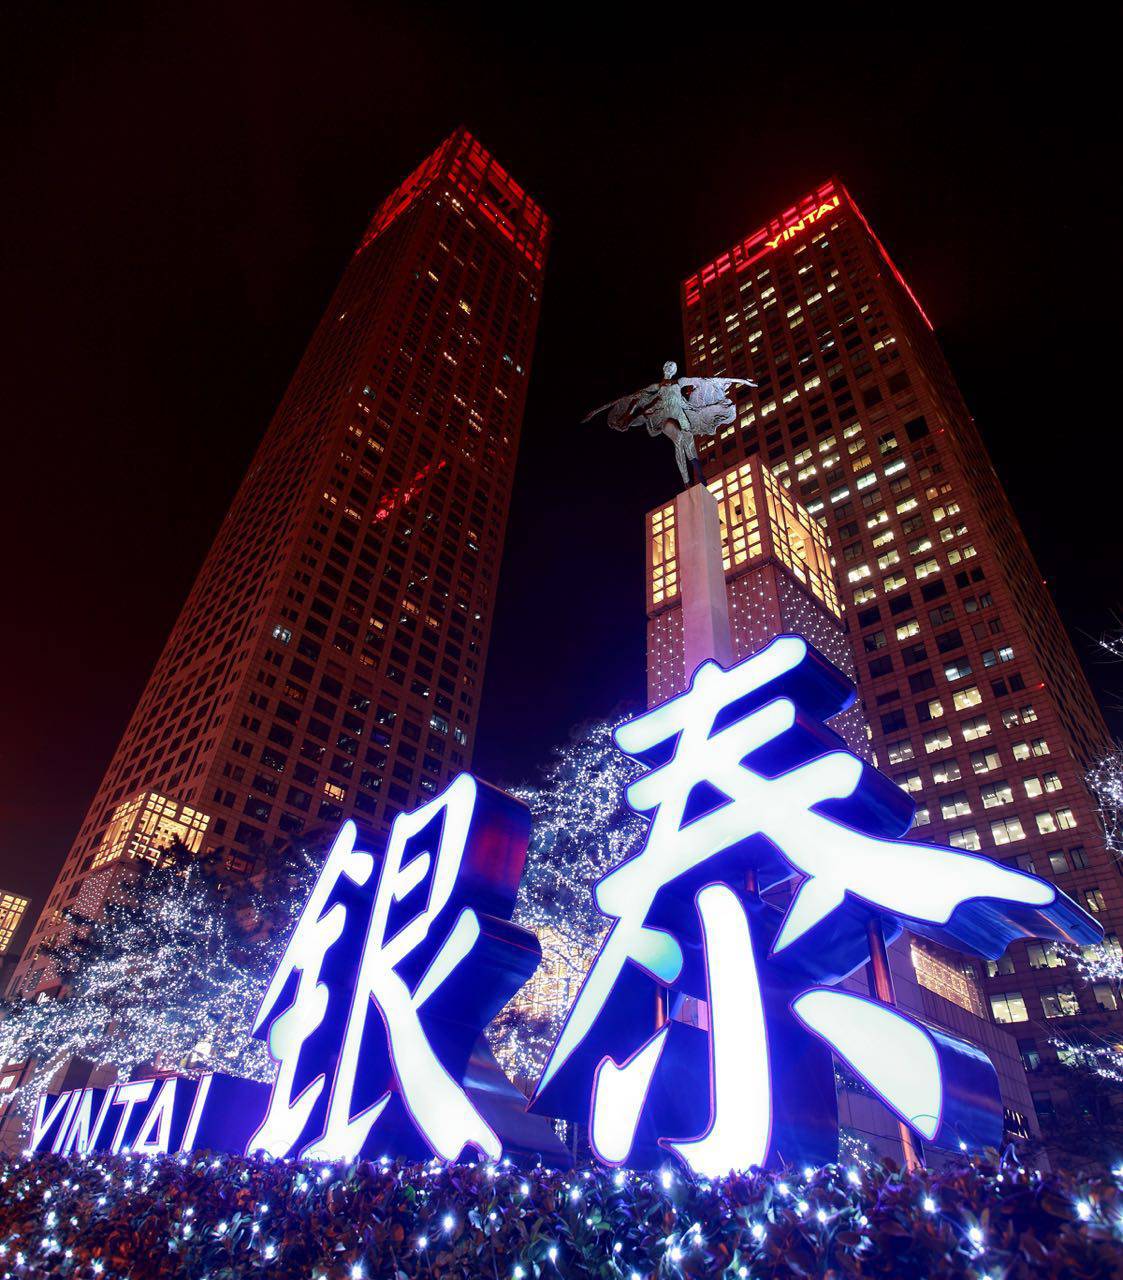 【福利】圣诞狂欢尽在北京银泰中心in01,豪礼寻找封面小明星